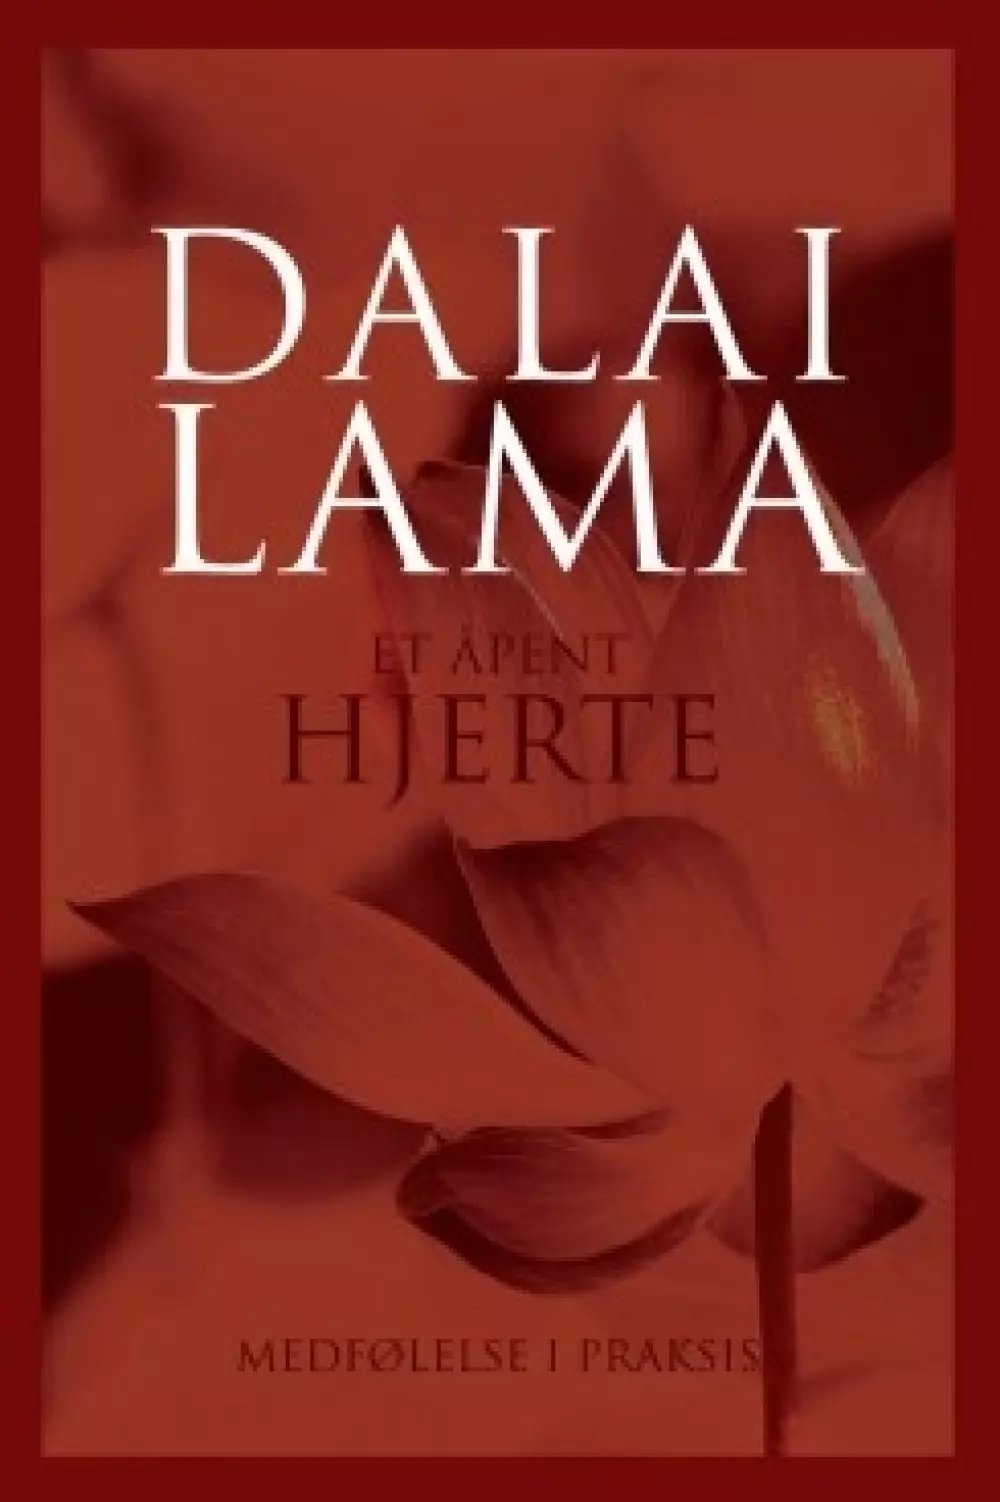 Et åpent hjerte - Dalai Lama 978829161462500000201 Bøker Filosofi & religion